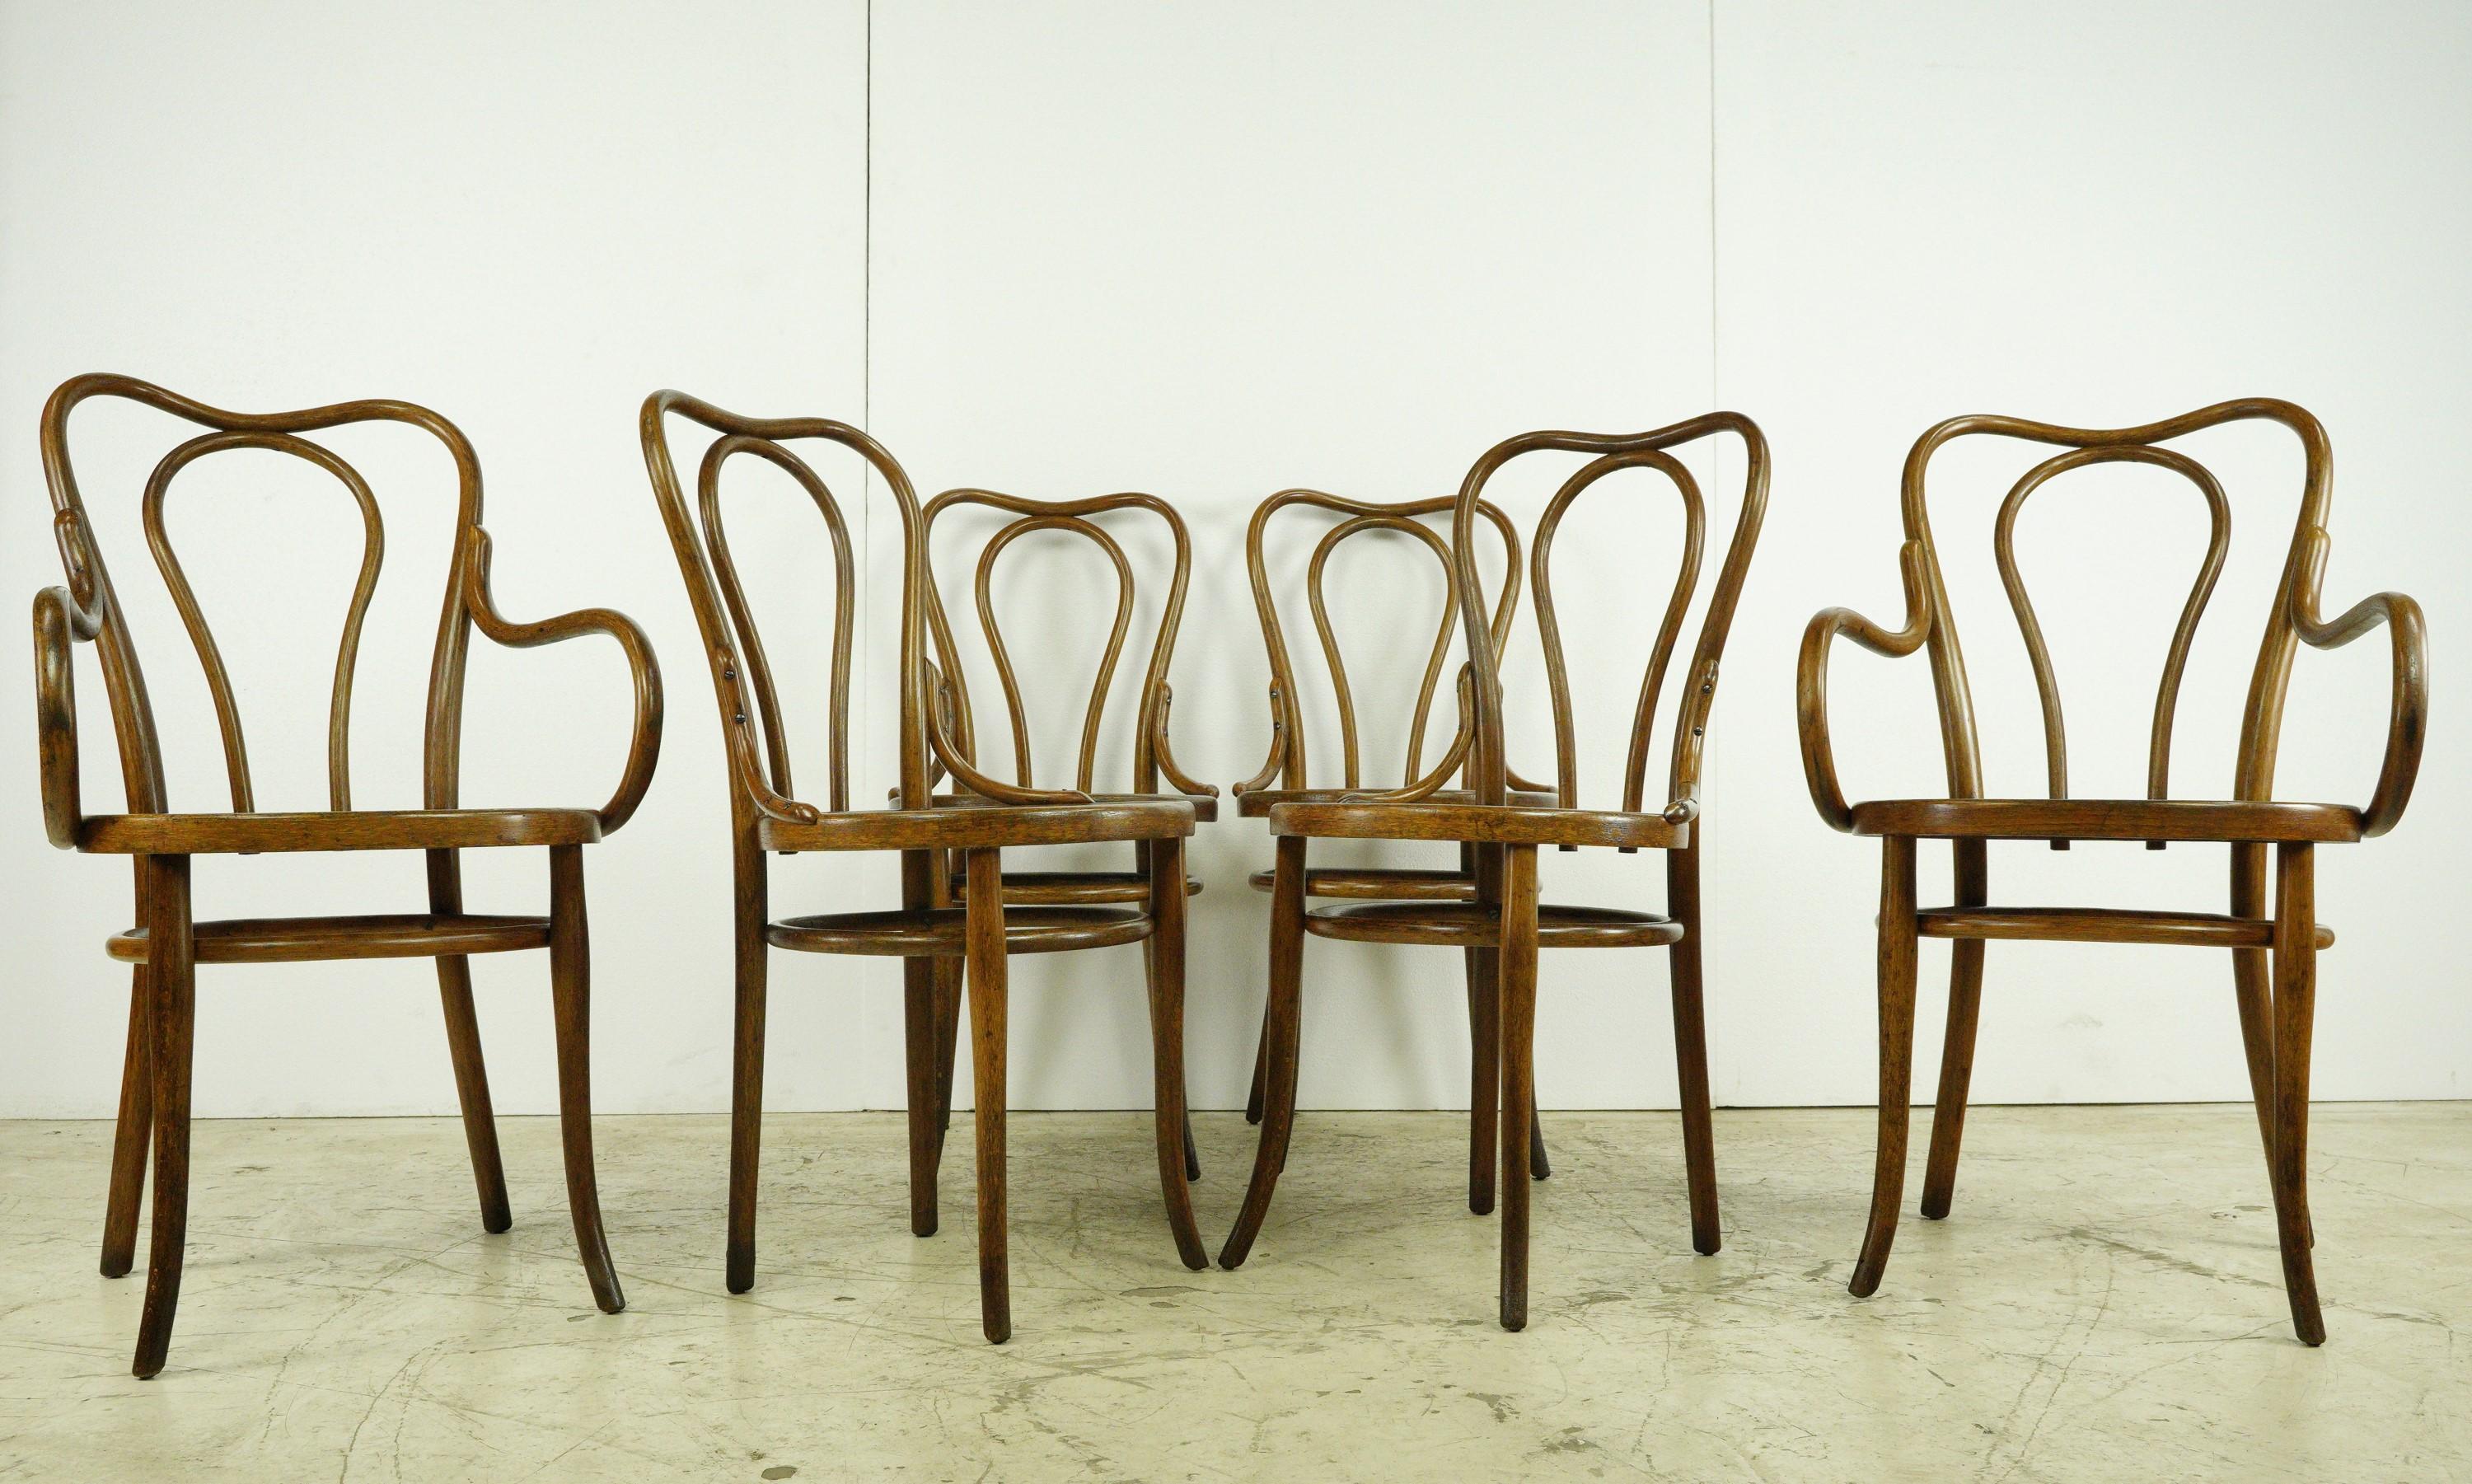 Vier dieser ikonischen Stühle haben ein klassisches Design, während die beiden Endstühle mit Armlehnen ausgestattet sind. Alle haben ein passendes erhabenes Muster. Bitte die Fotos heranziehen. Trotz ihres Alters ist das Set in gutem Zustand und